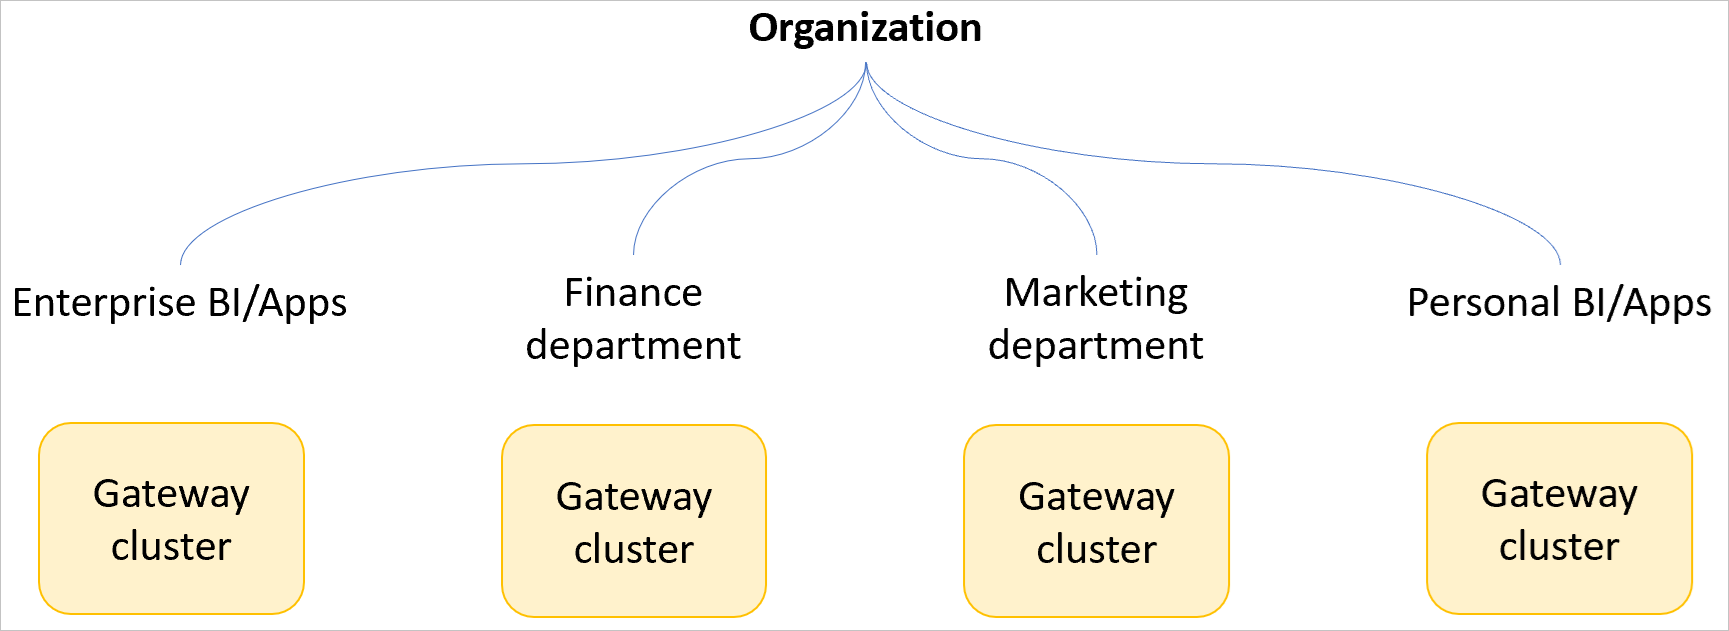 Gambar contoh organisasi dengan kluster gateway terpisah untuk BI dan aplikasi perusahaan, departemen keuangan, departemen pemasaran, serta BI dan aplikasi pribadi.